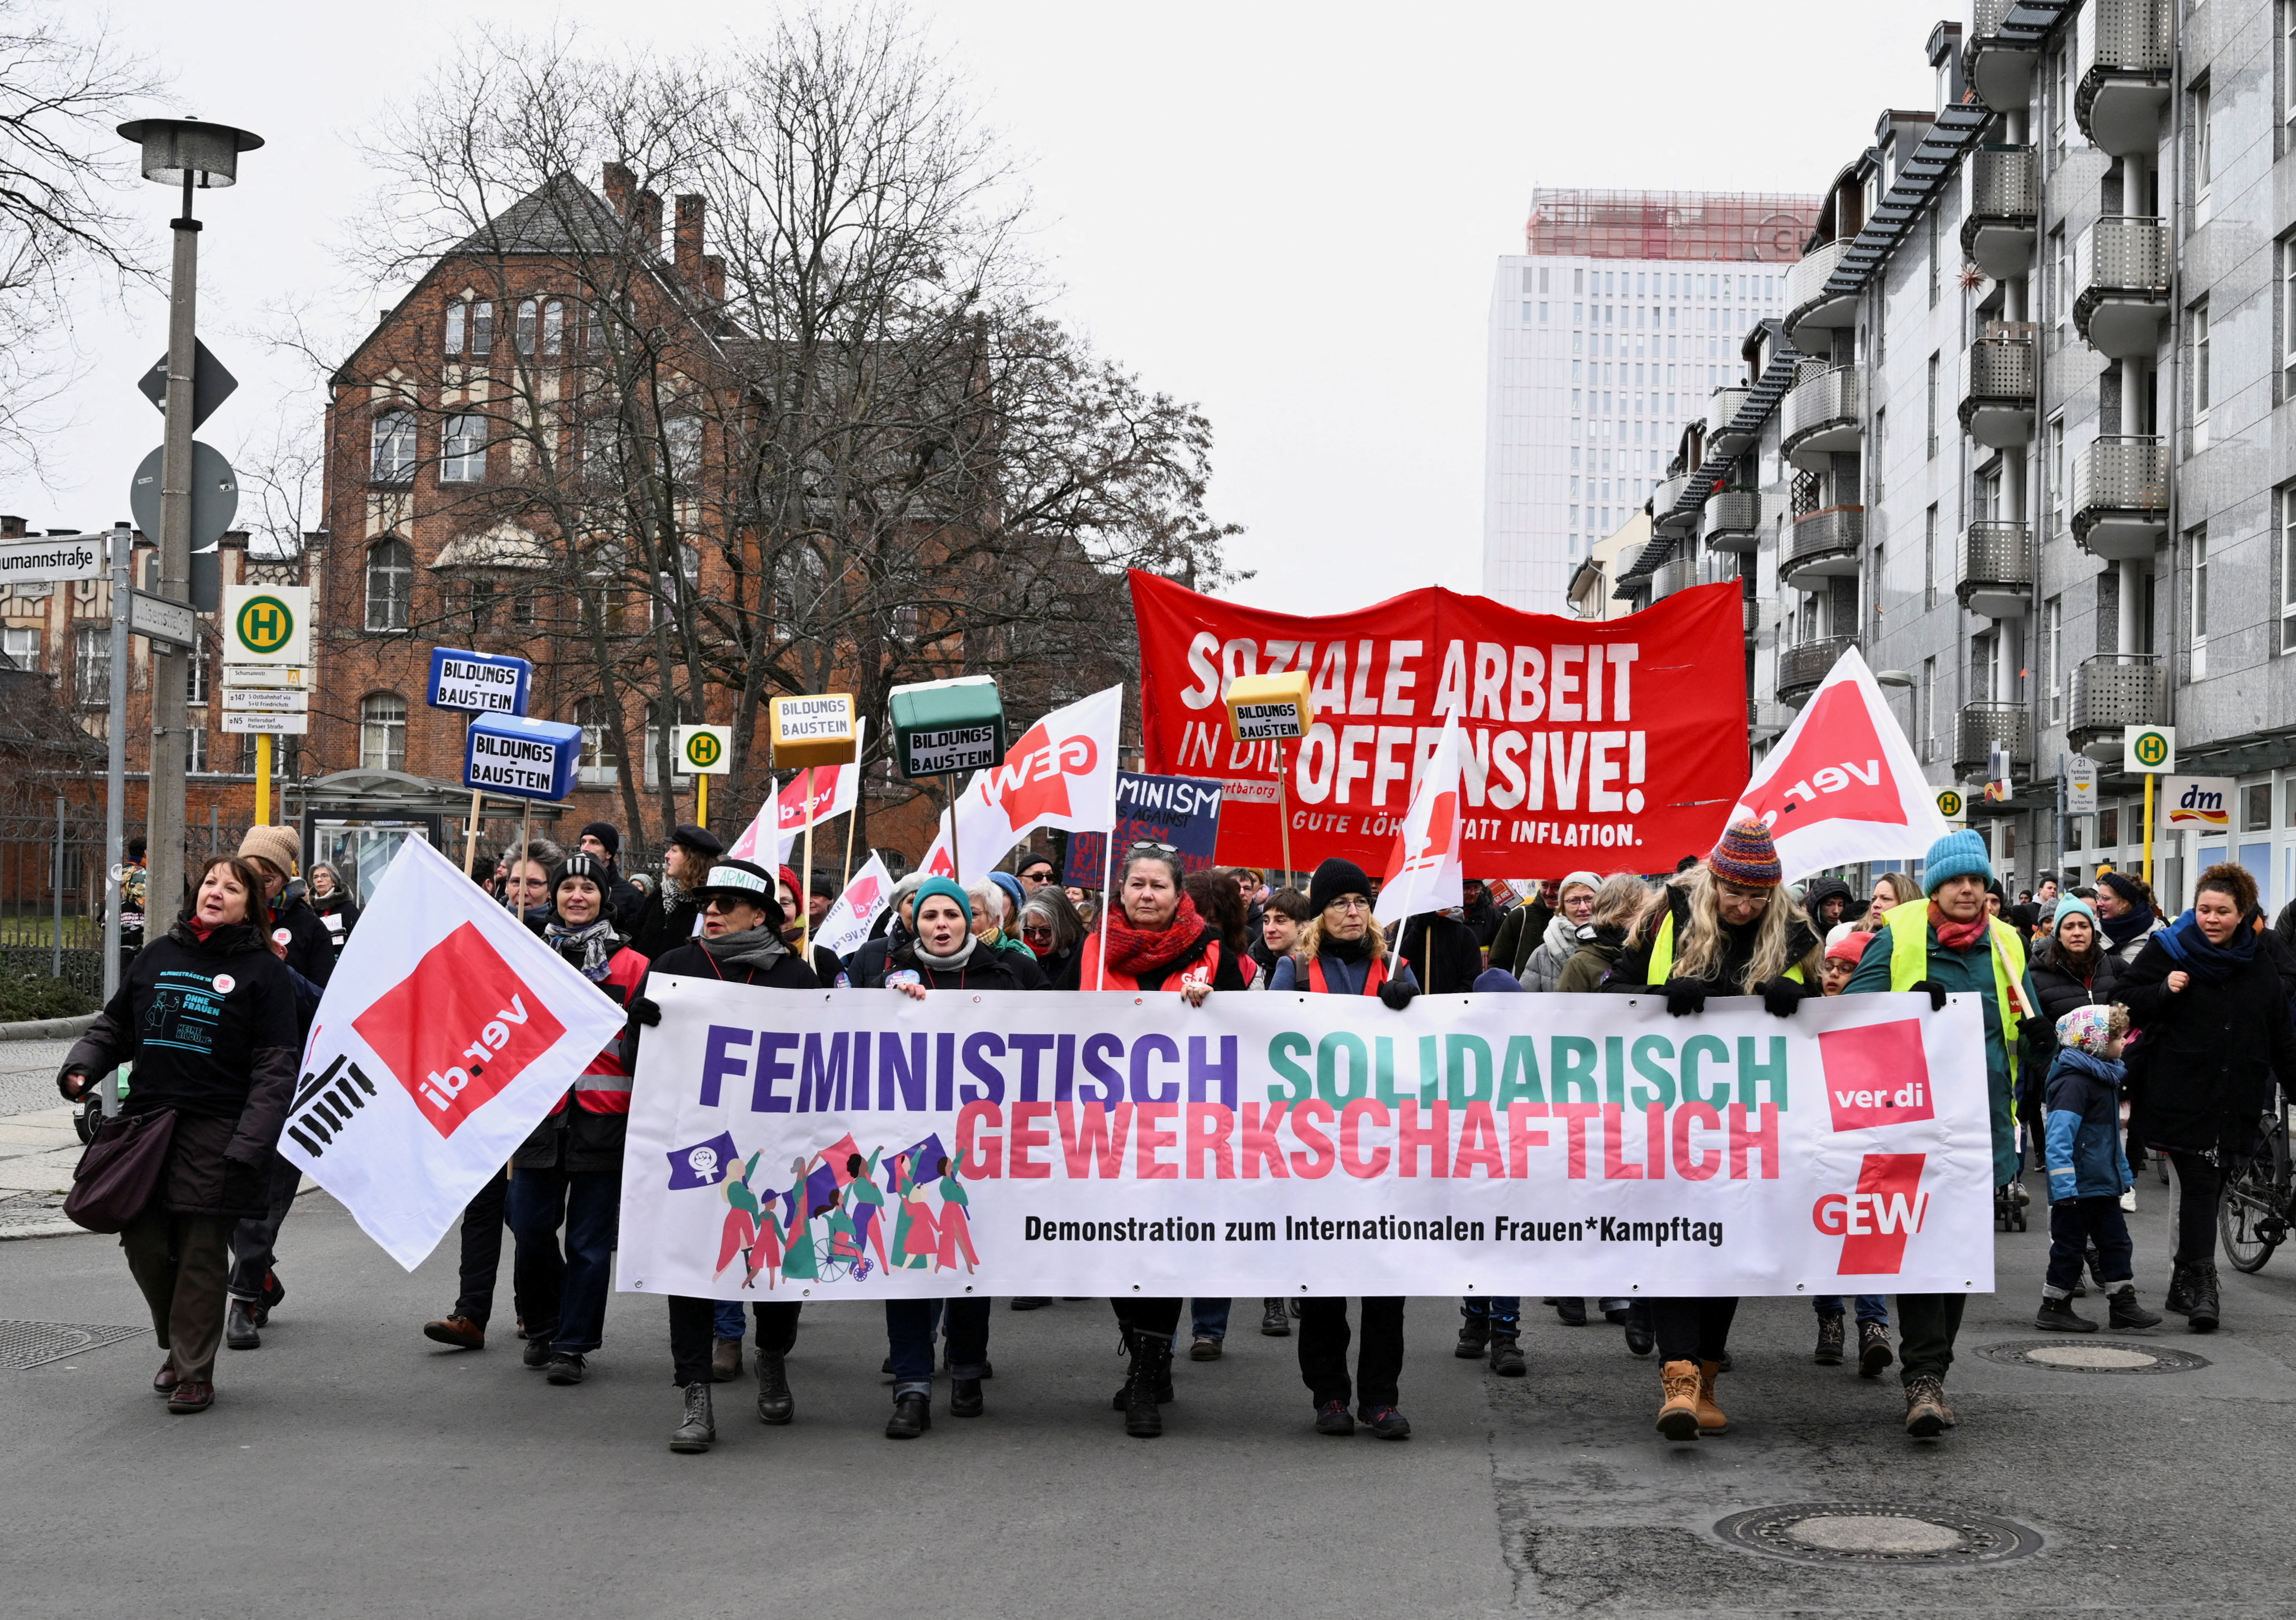 La gente sostiene una pancarta que dice "Unión de Solidaridad Feminista" durante una manifestación para conmemorar el Día Internacional de la Mujer, en Berlín, Alemania.